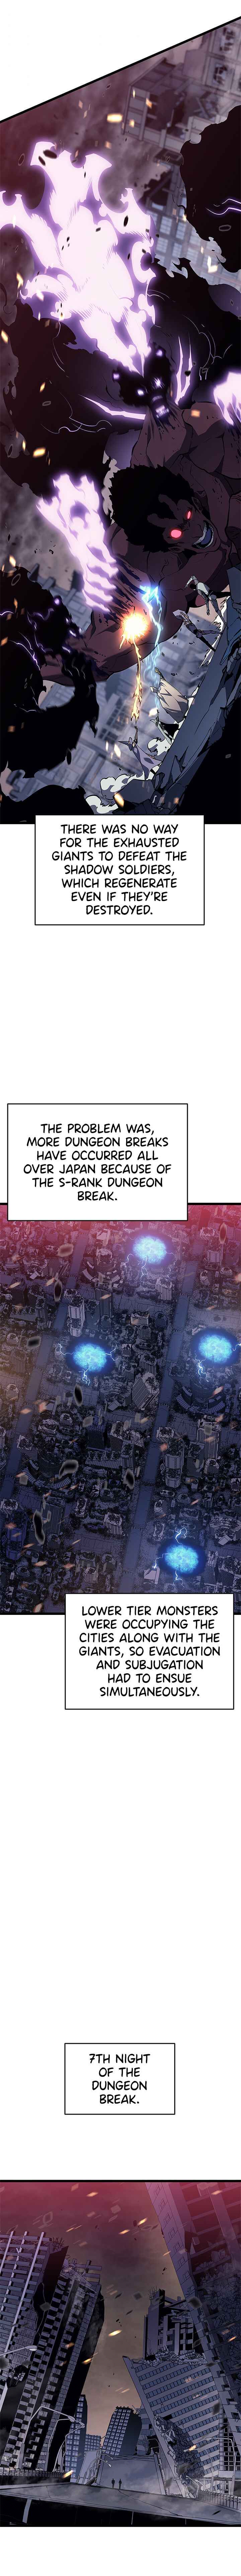 Solo Leveling Manga Manga Chapter - 135 - image 6